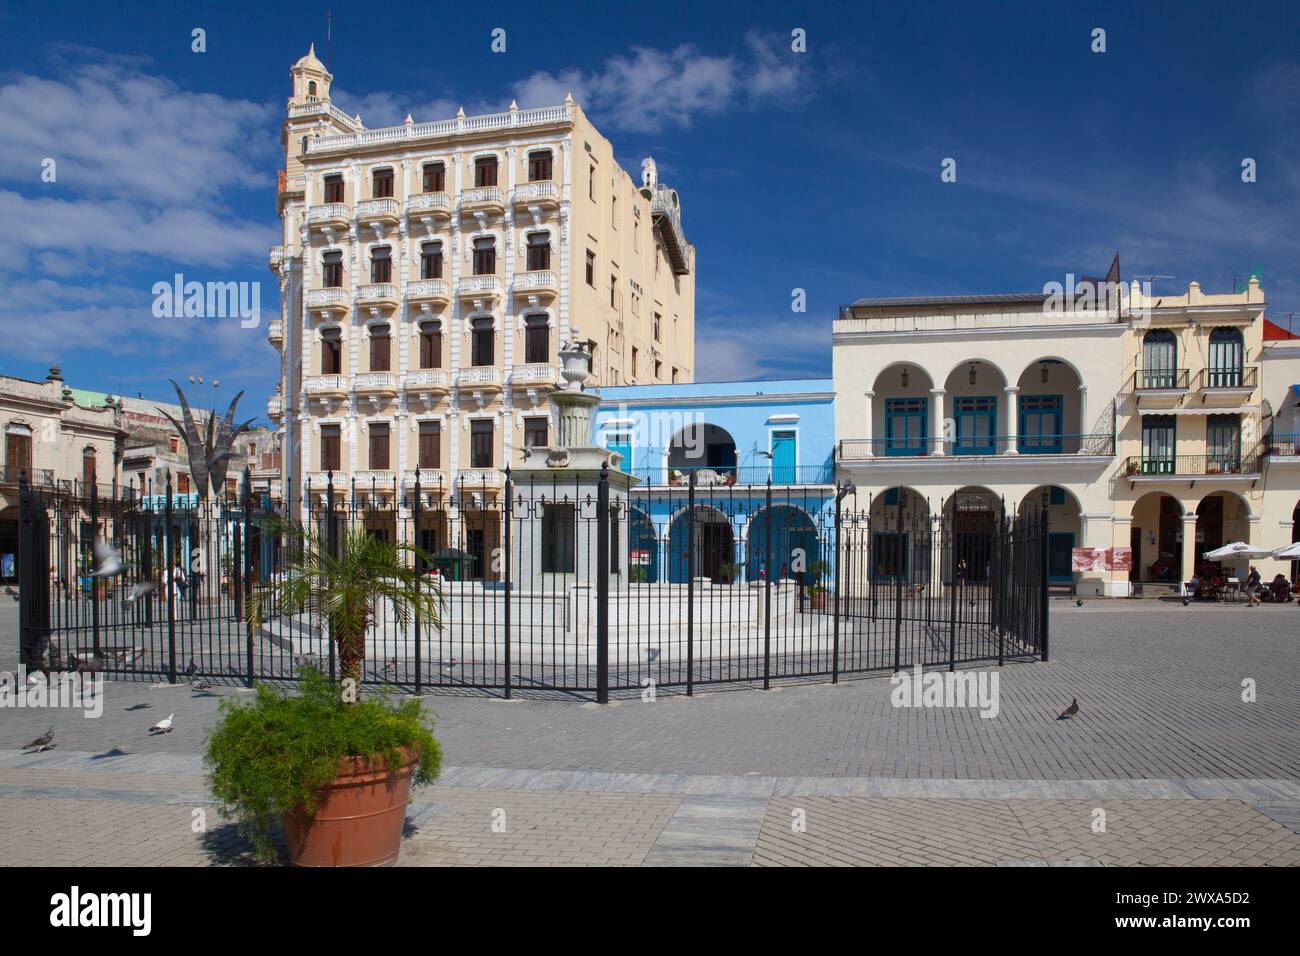 Old colonial buildings on Plaza Vieja square in Havana Vieja. Stock Photo